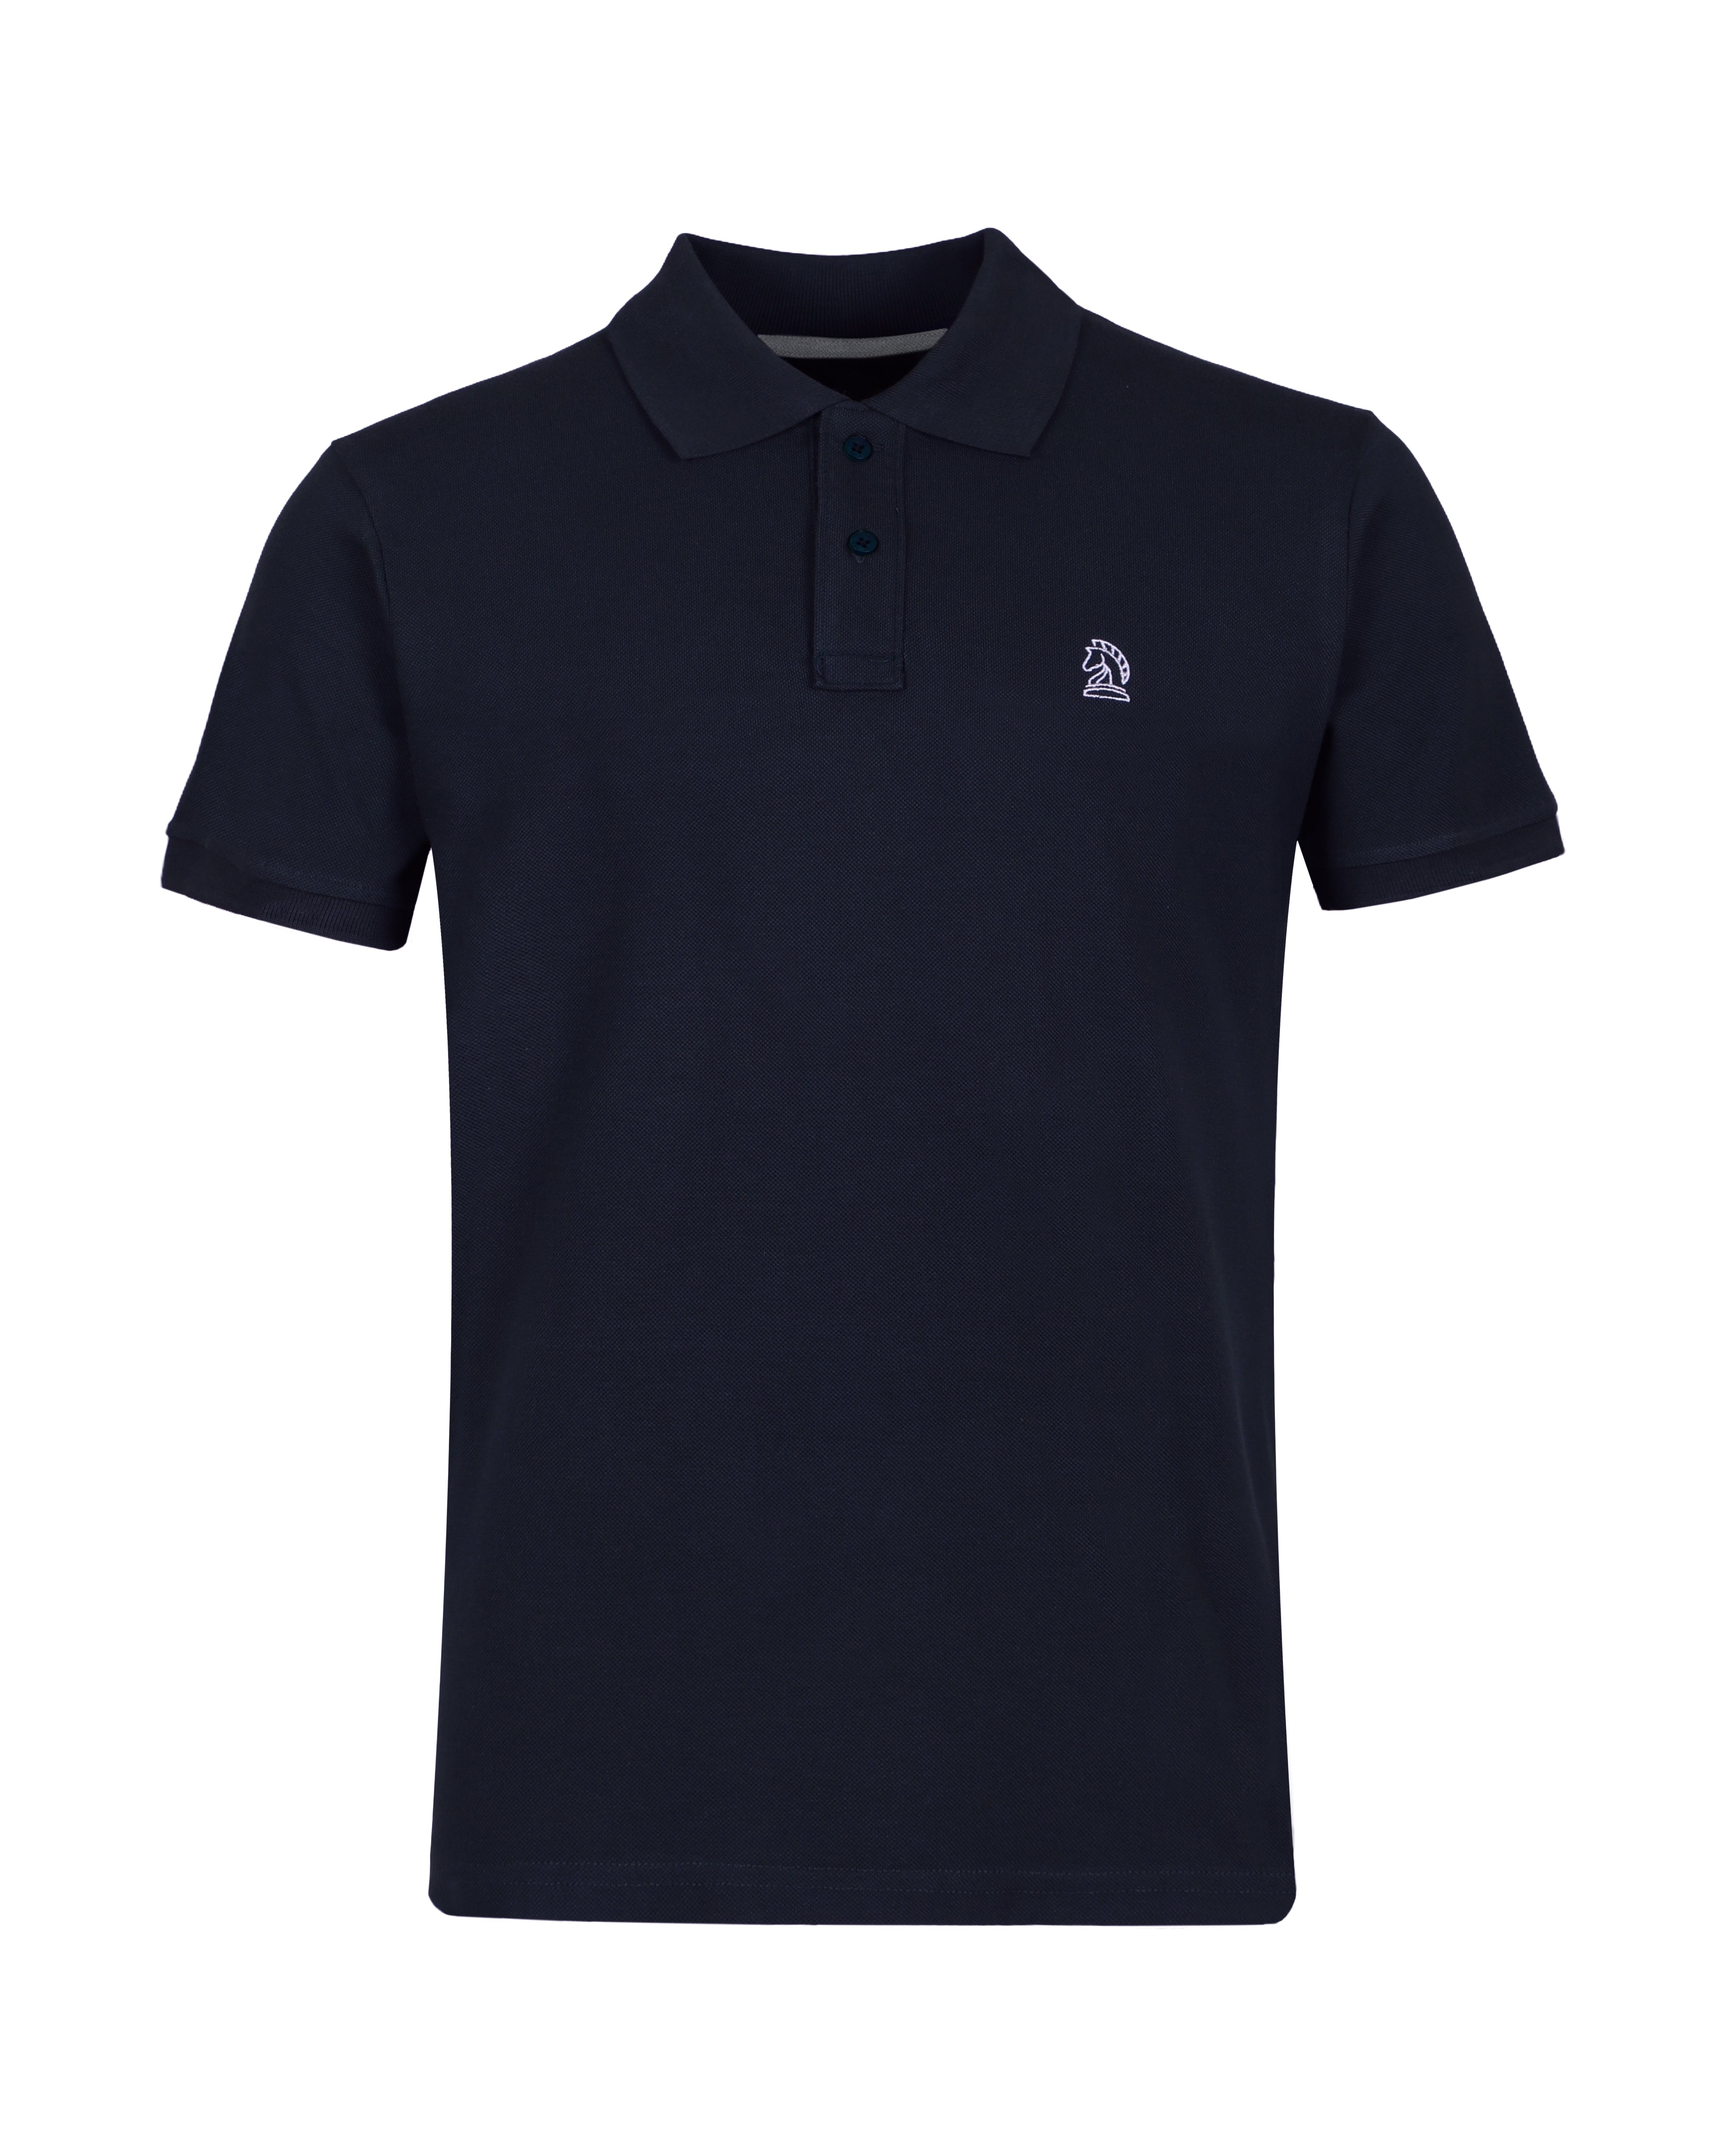 Navy Blue Color Premium Cotton T-Shirt